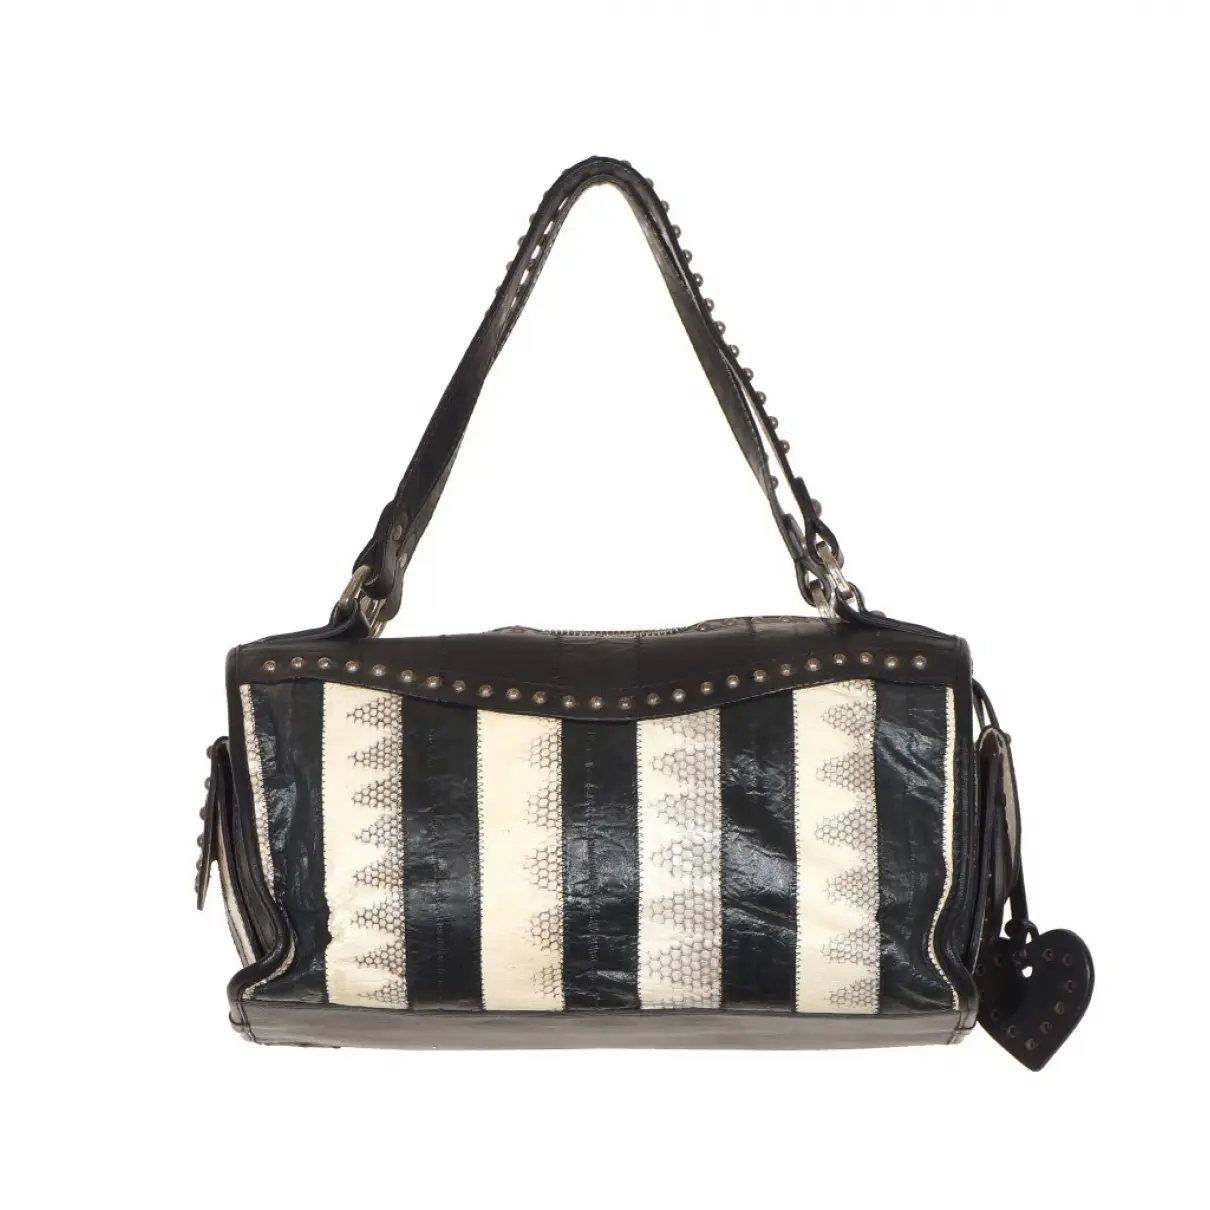 Buy Luella Glitter handbag online